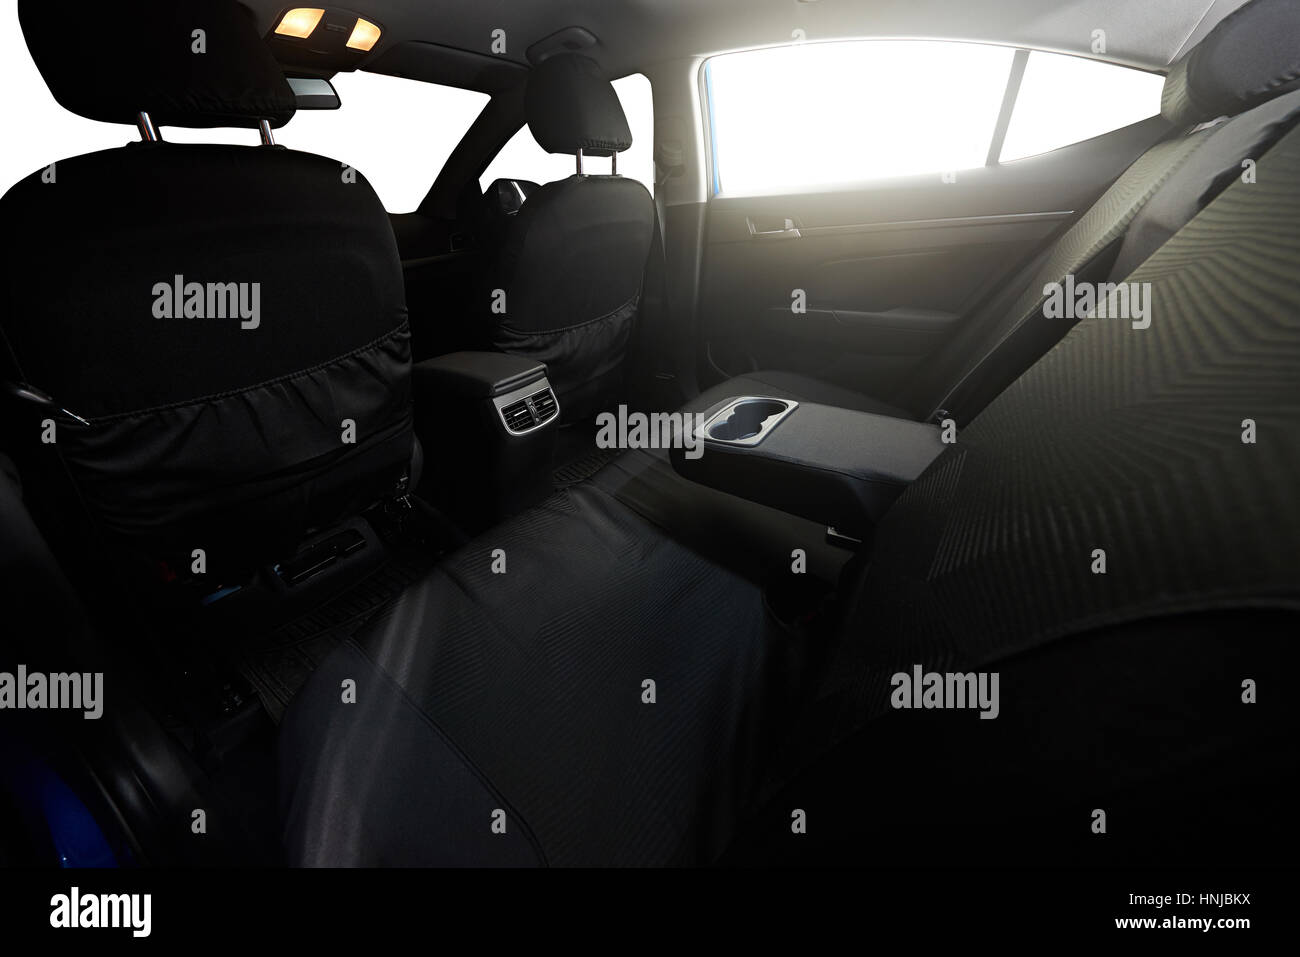 Retour siège clair de sedan voiture moderne avec des fenêtres isolées Banque D'Images